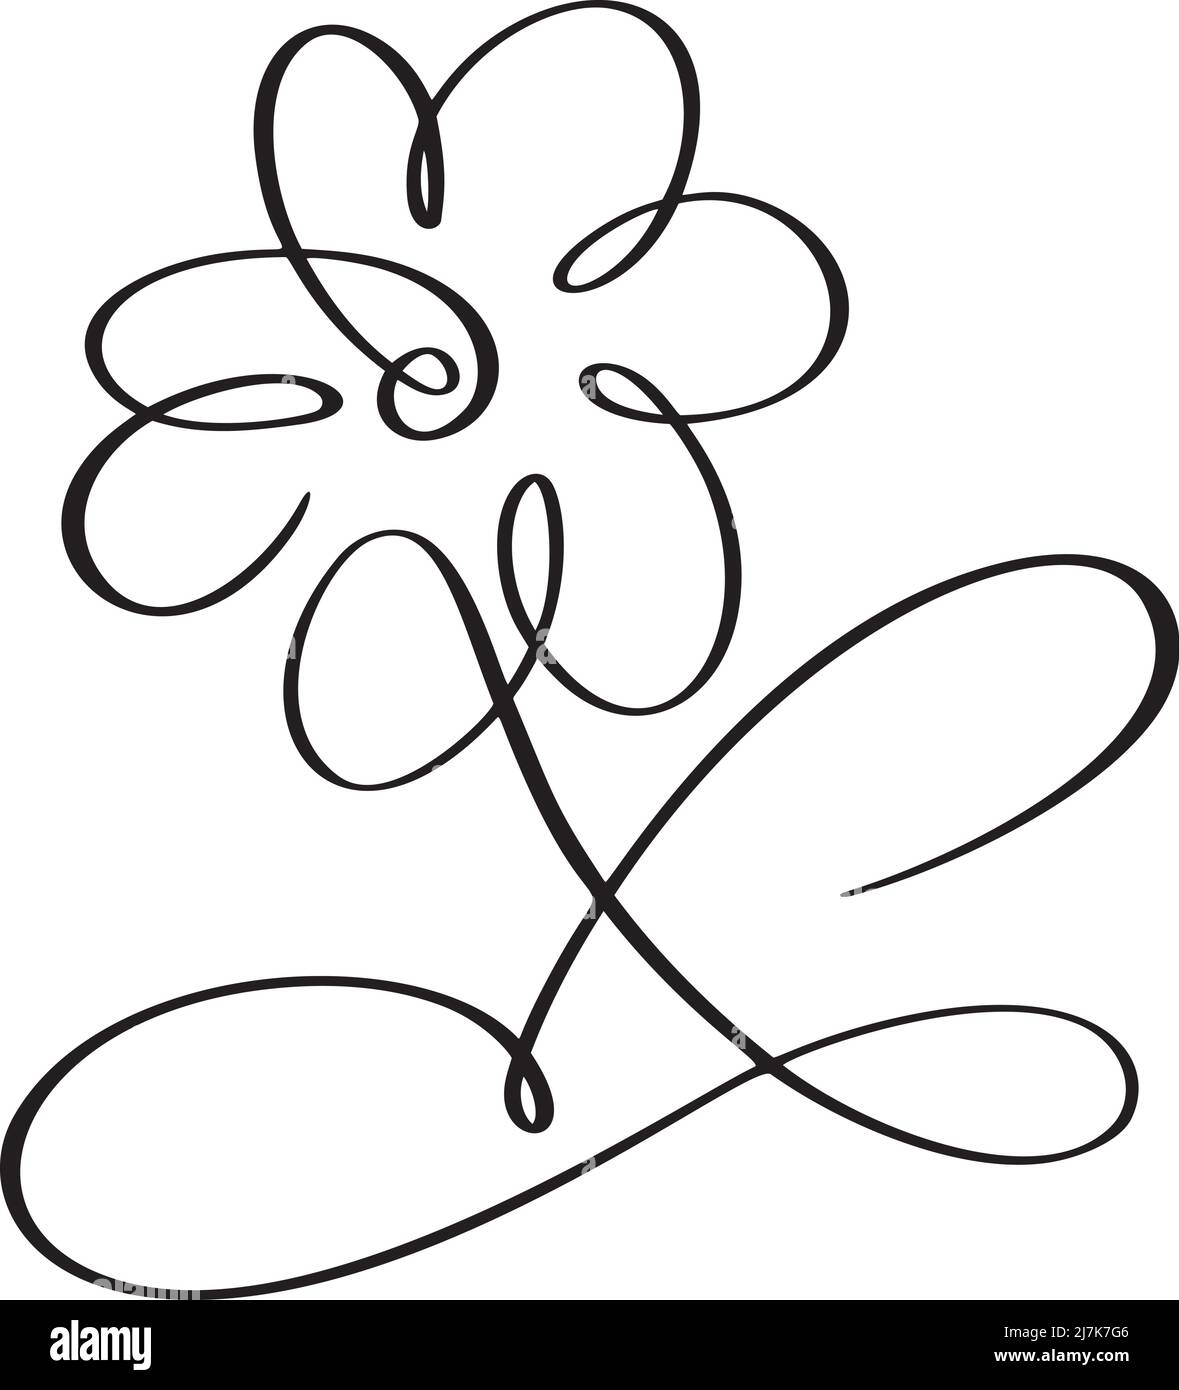 Vektor Hand gezeichnet eine Linie Kunst Zeichnung der Blume. Minimalistisches, trendiges zeitgenössisches Blumendesign perfekt für Wandkunst, Drucke, Social Media, Poster Stock Vektor